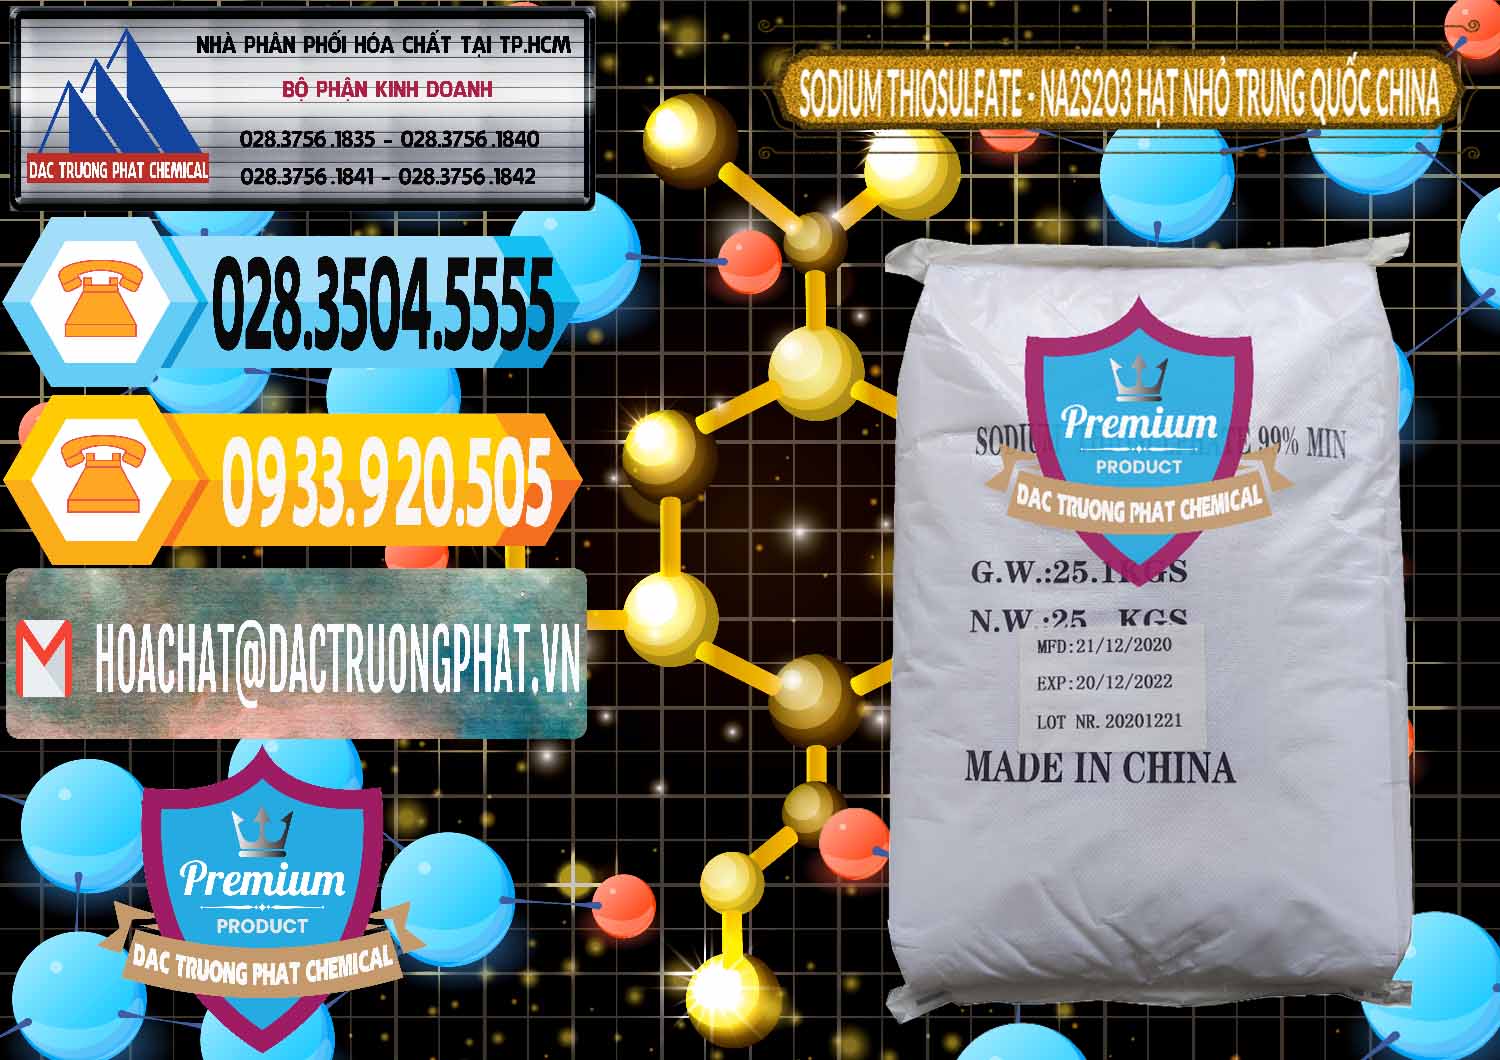 Chuyên phân phối & bán Sodium Thiosulfate - NA2S2O3 Hạt Nhỏ Trung Quốc China - 0204 - Kinh doanh ( cung cấp ) hóa chất tại TP.HCM - hoachattayrua.net